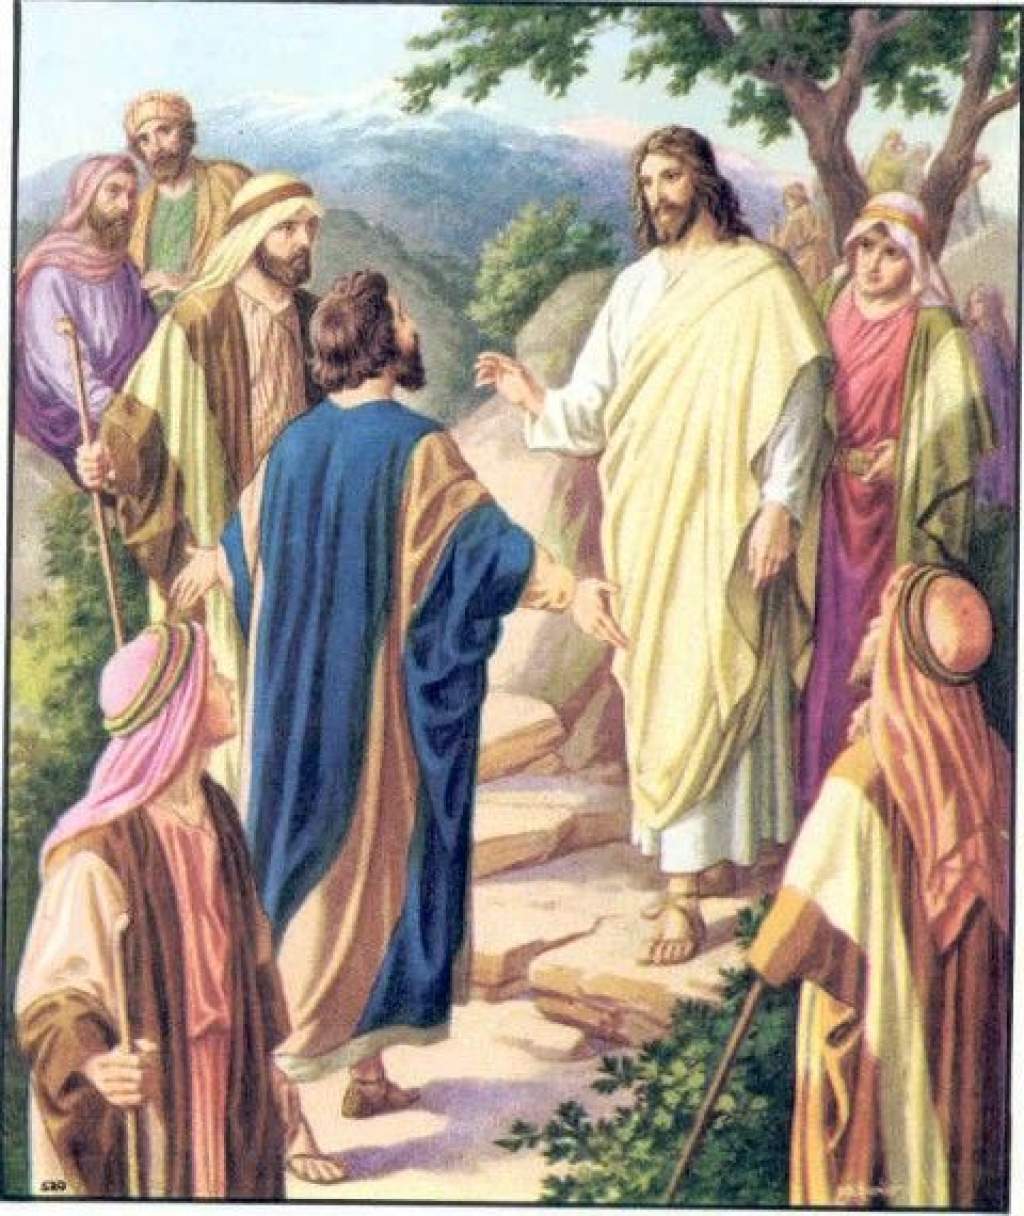 Napi evangélium- "Jézus egy alkalommal magához hívta a népet és tanítványait, majd így szólt hozzájuk:"